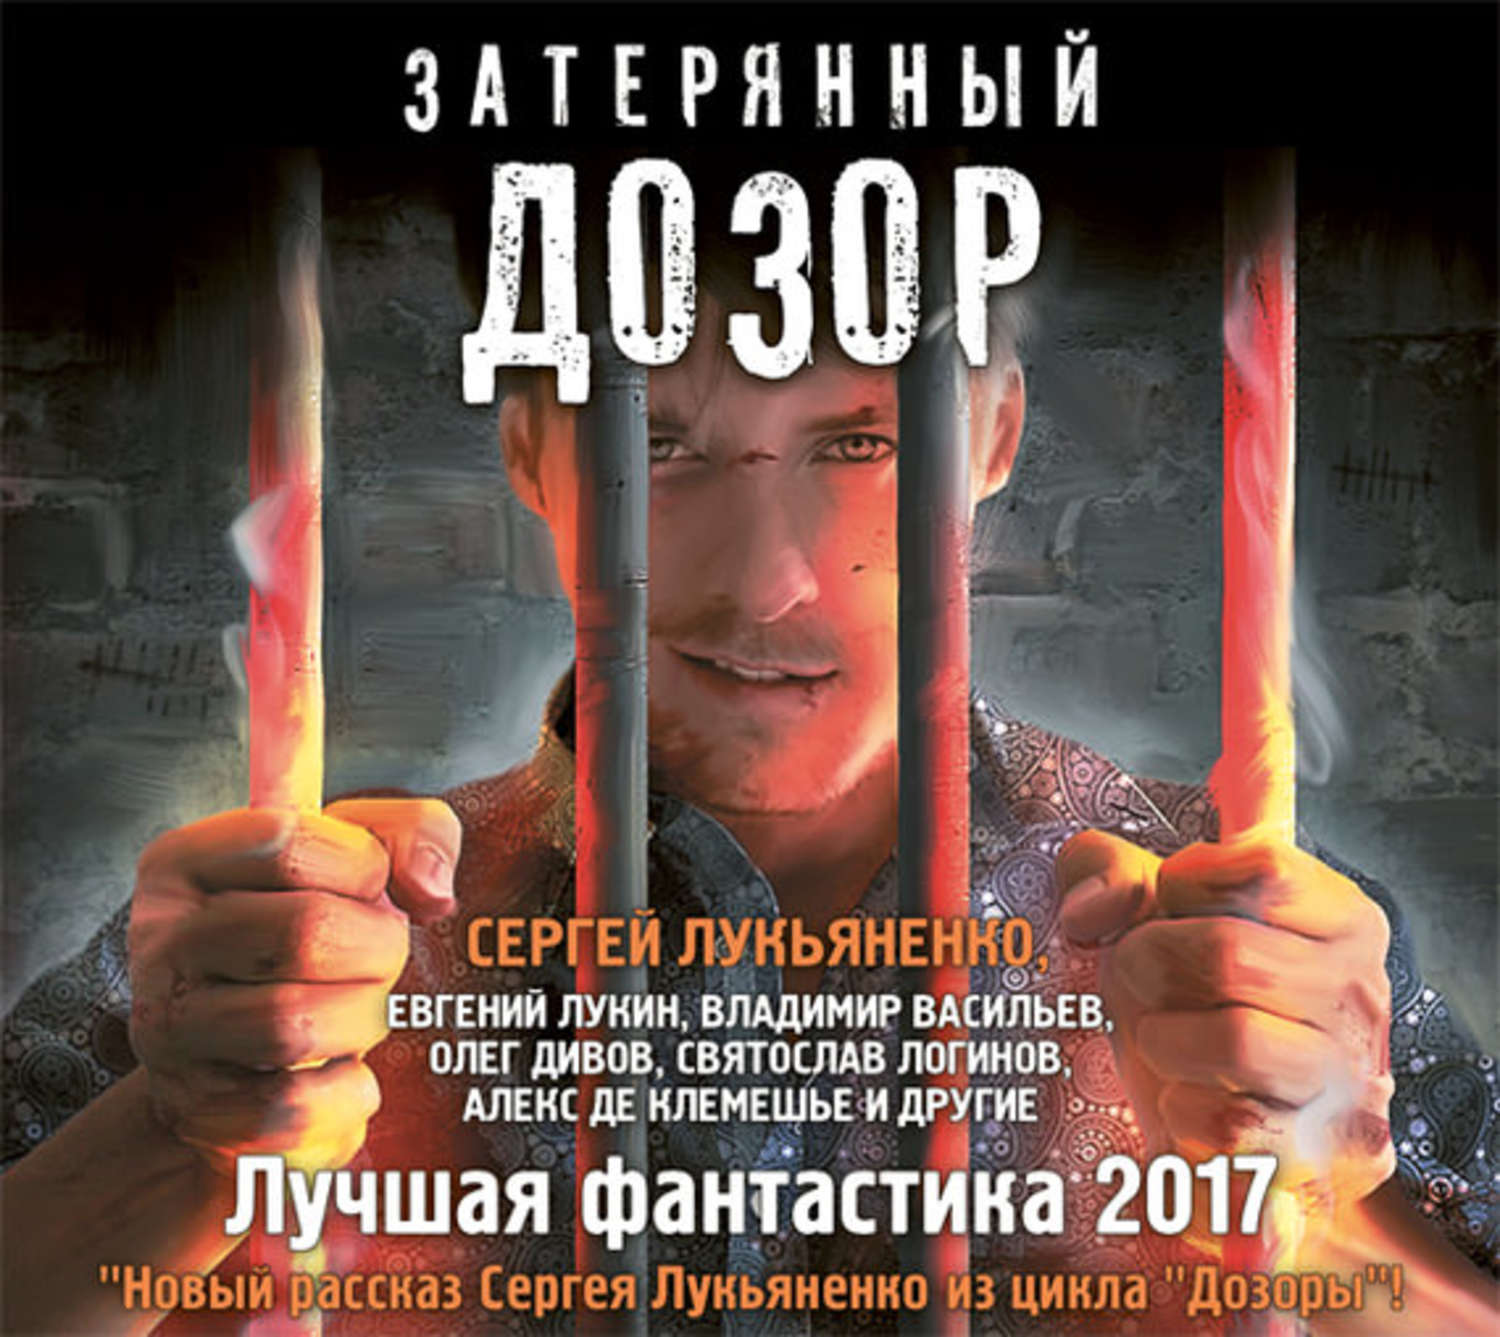 Дмитрий казаков все книги скачать бесплатно